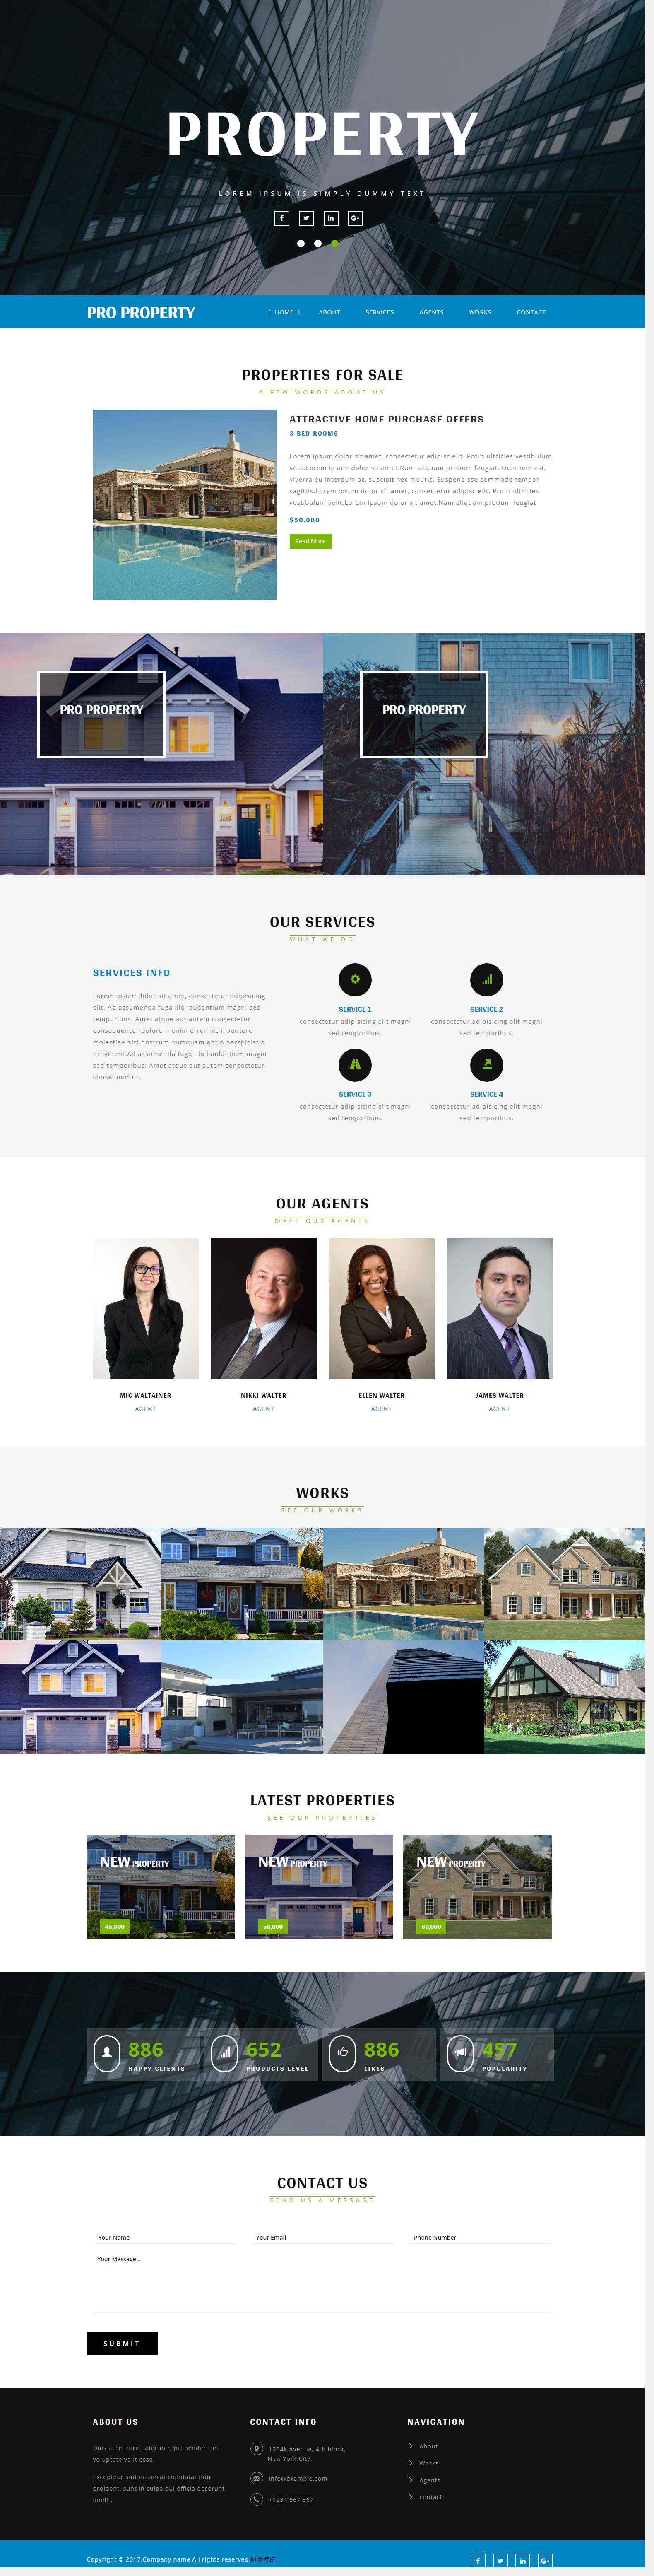 蓝色宽屏风格的房产别墅经纪公司企业网站模板